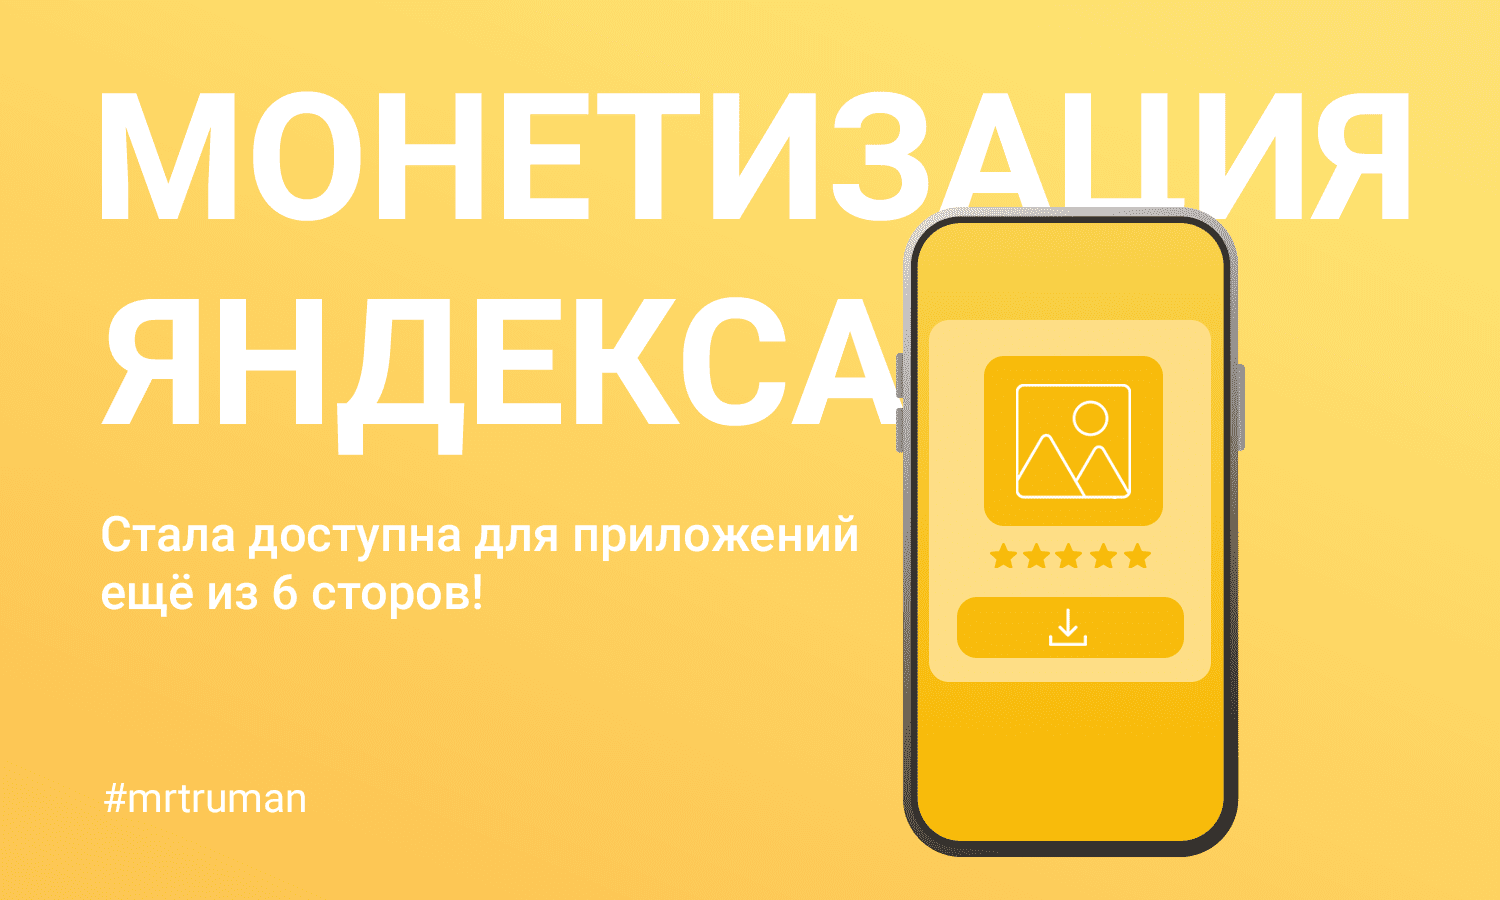 Монетизация Яндекса стала еще доступней